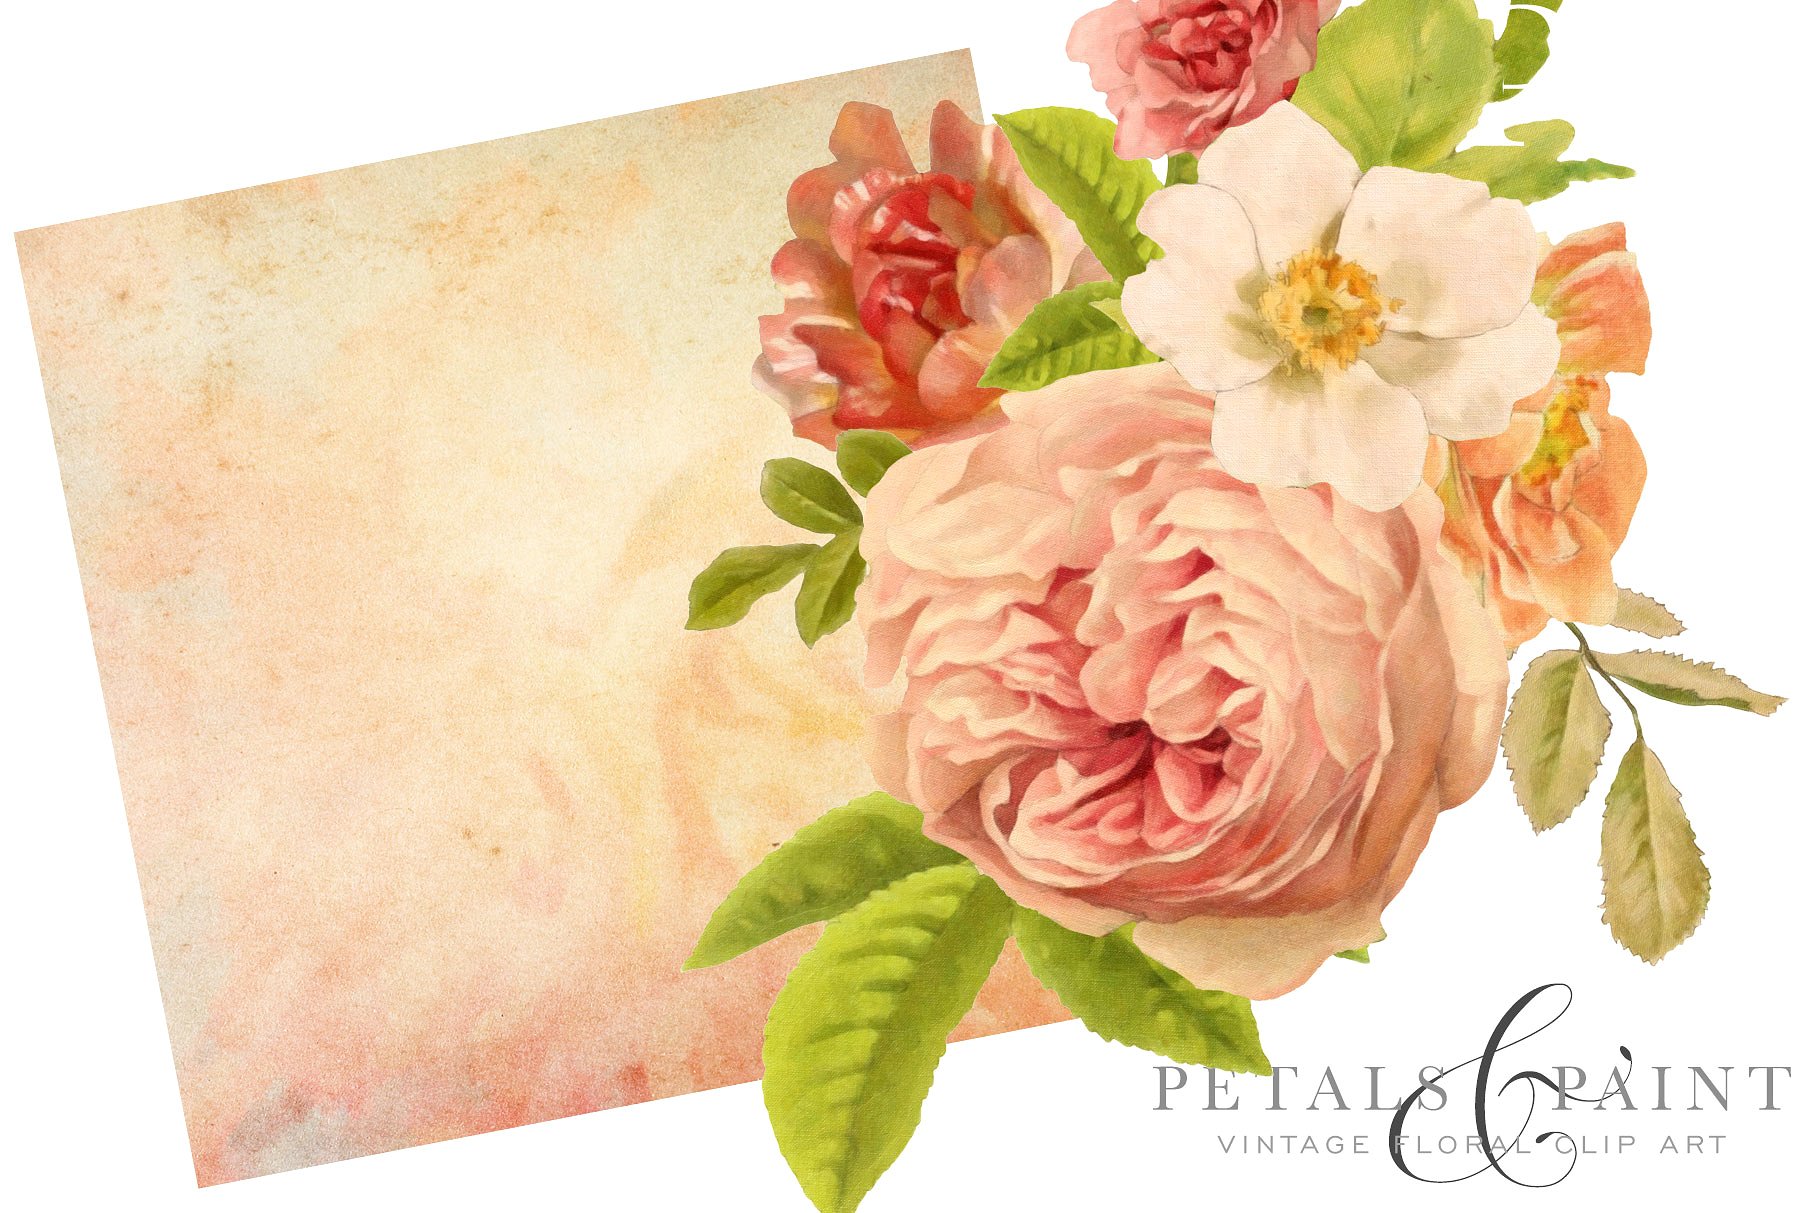 复古油画质感花卉花瓣纹理 Petals & Paint – Floral Clip Art插图(4)